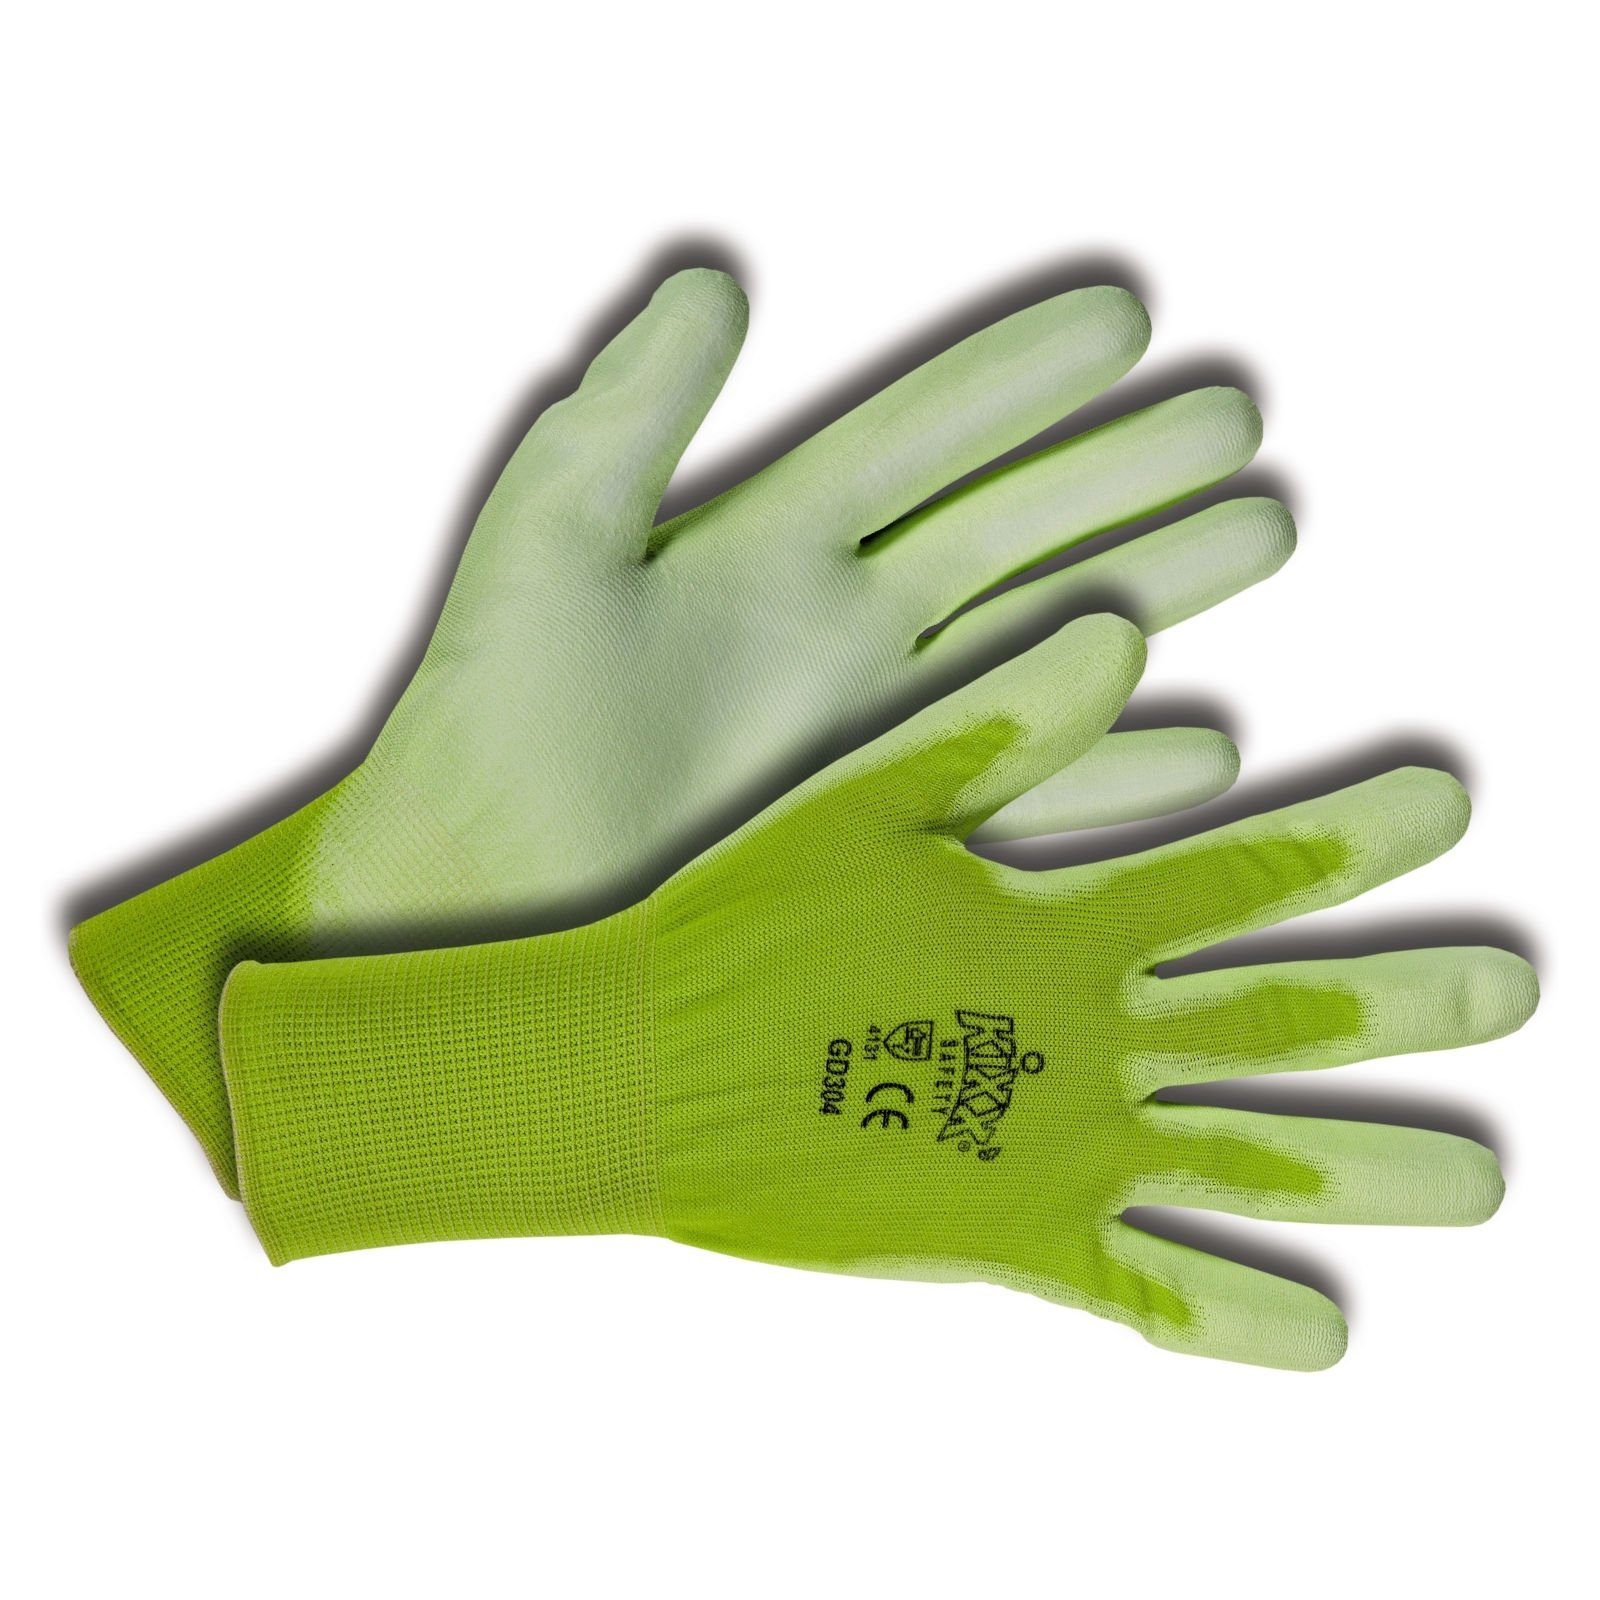 Handschuhe Gartenhandschuhe Hellgrün/Limette KIXX f. Gartenarbeit,